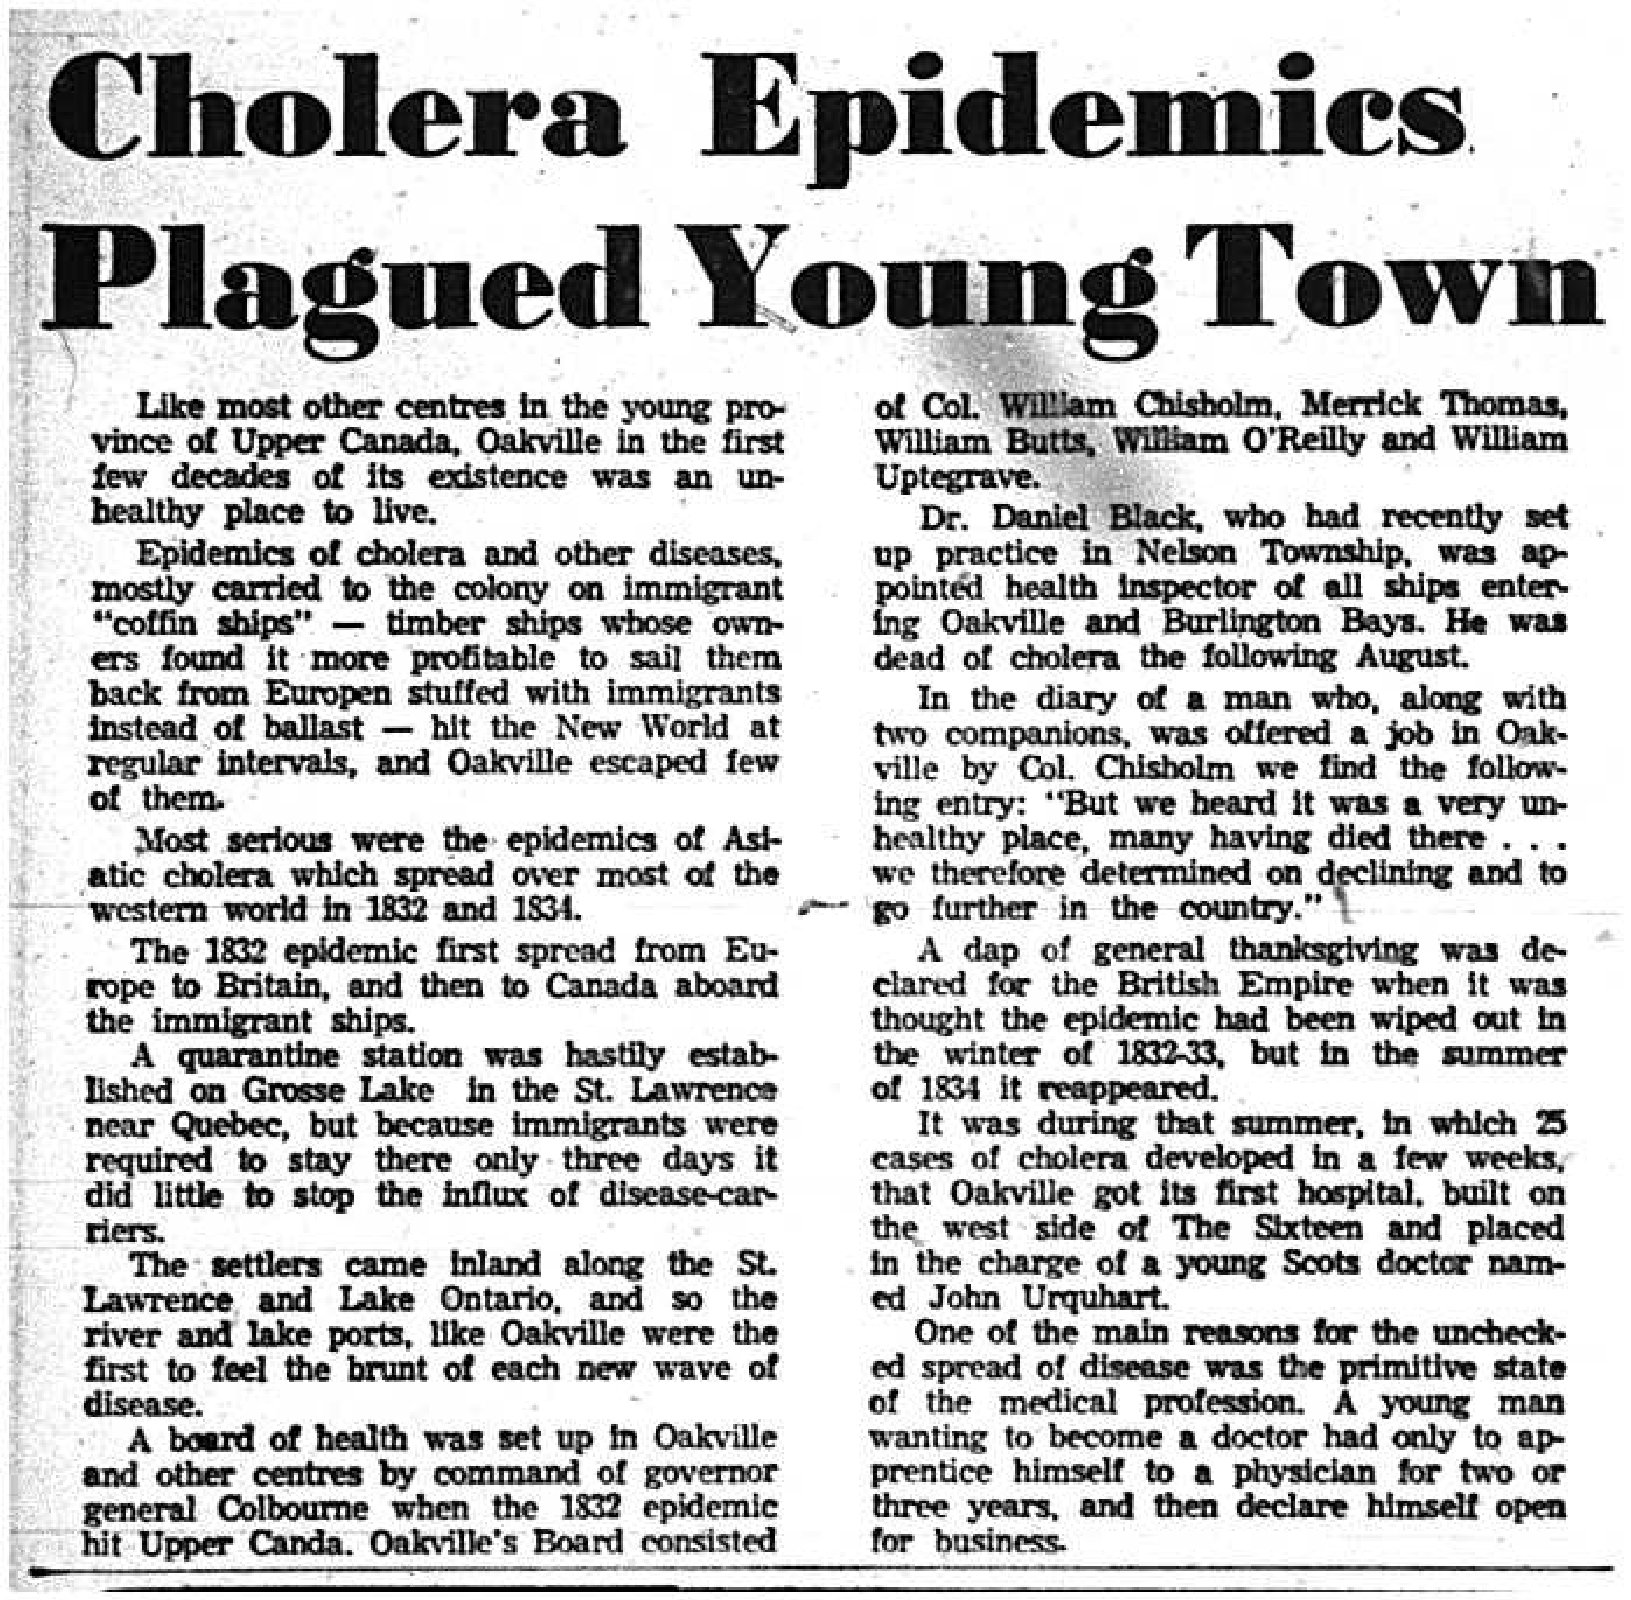 Cholera Epidemics Plagued Young Town